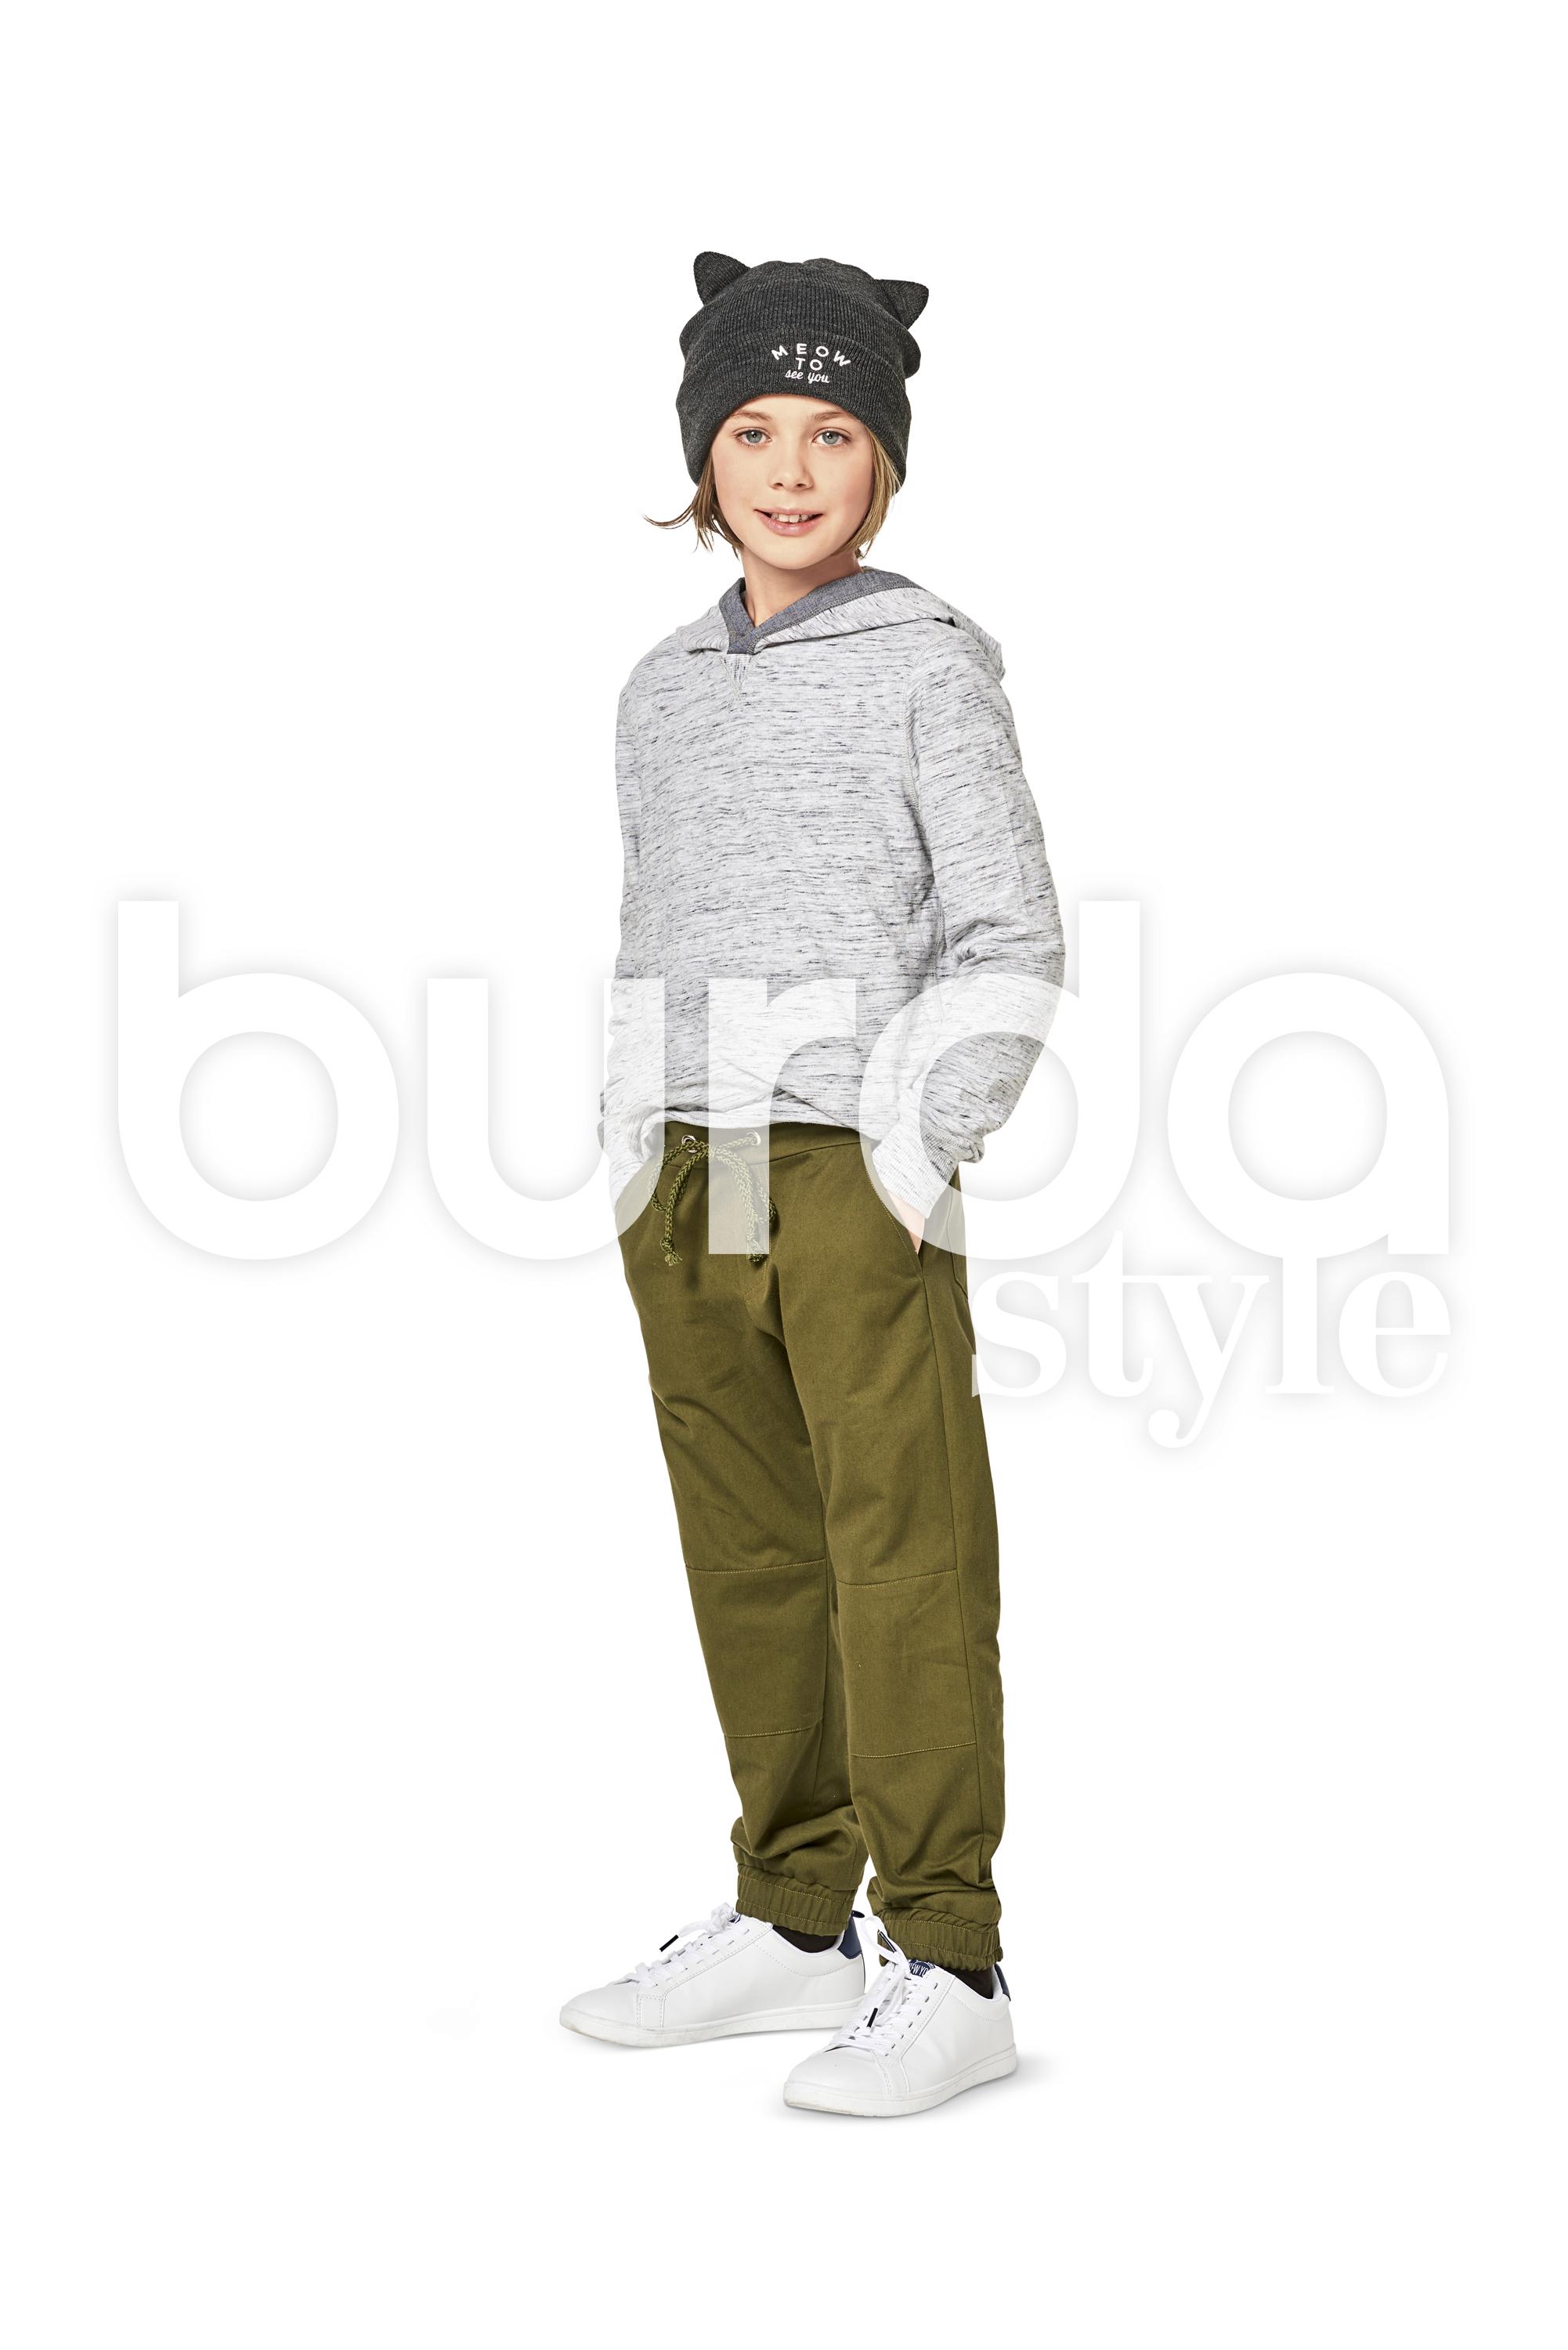 Burda B9354 Girl/Girl Plus Pant and Short